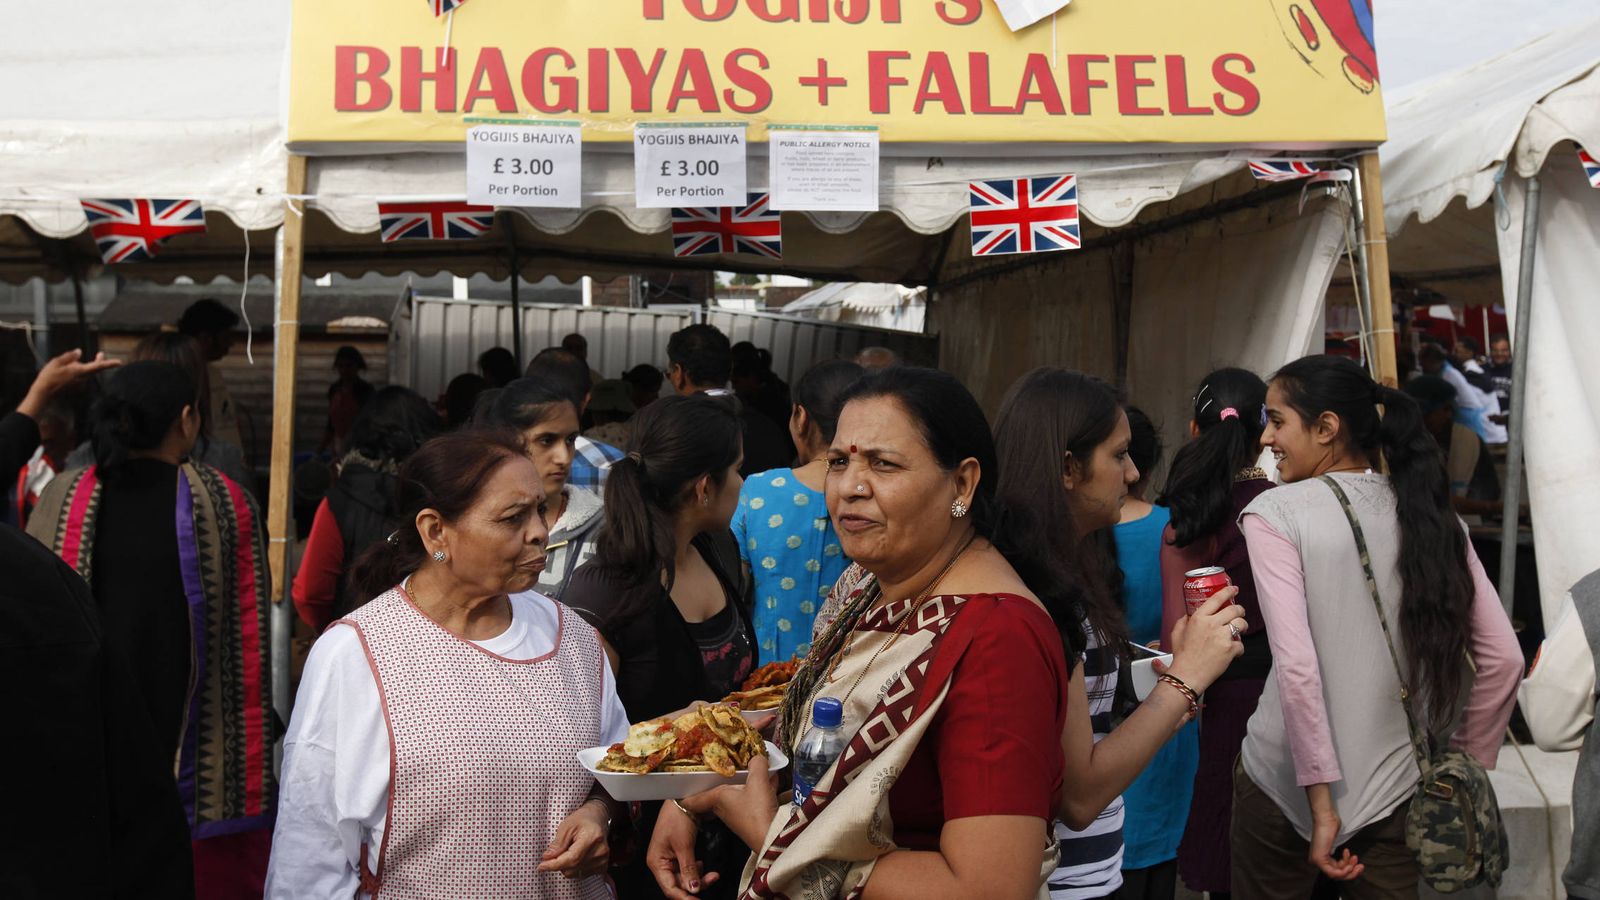 Foto: Varias personas hacen cola en un puesto de comida india durante una celebración en la escuela Swaminarayan en Londres, en junio de 2012. (Reuters)